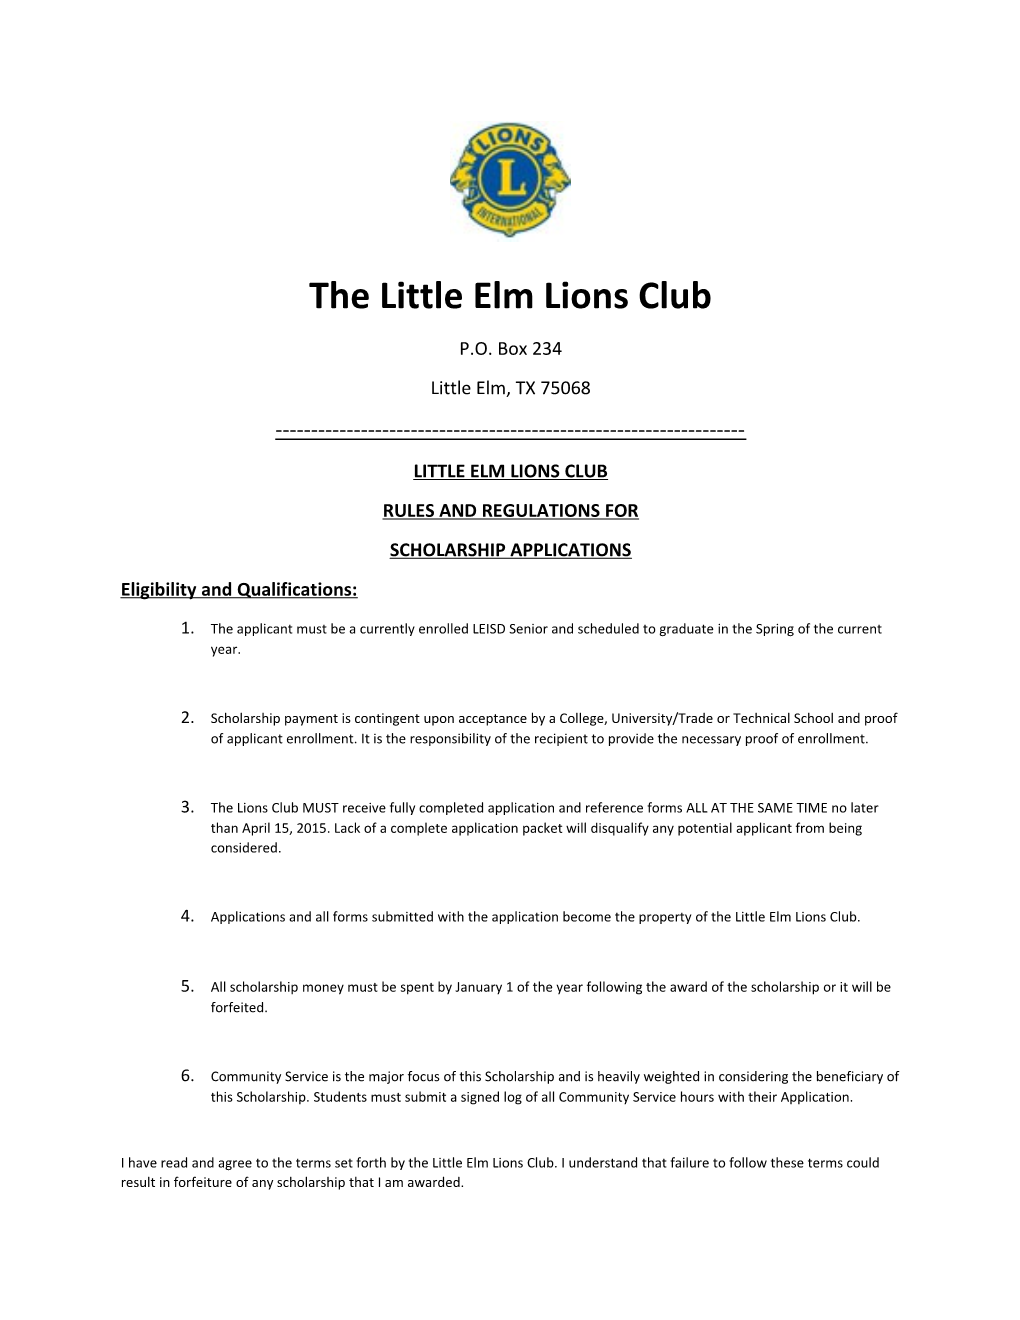 The Little Elm Lions Club